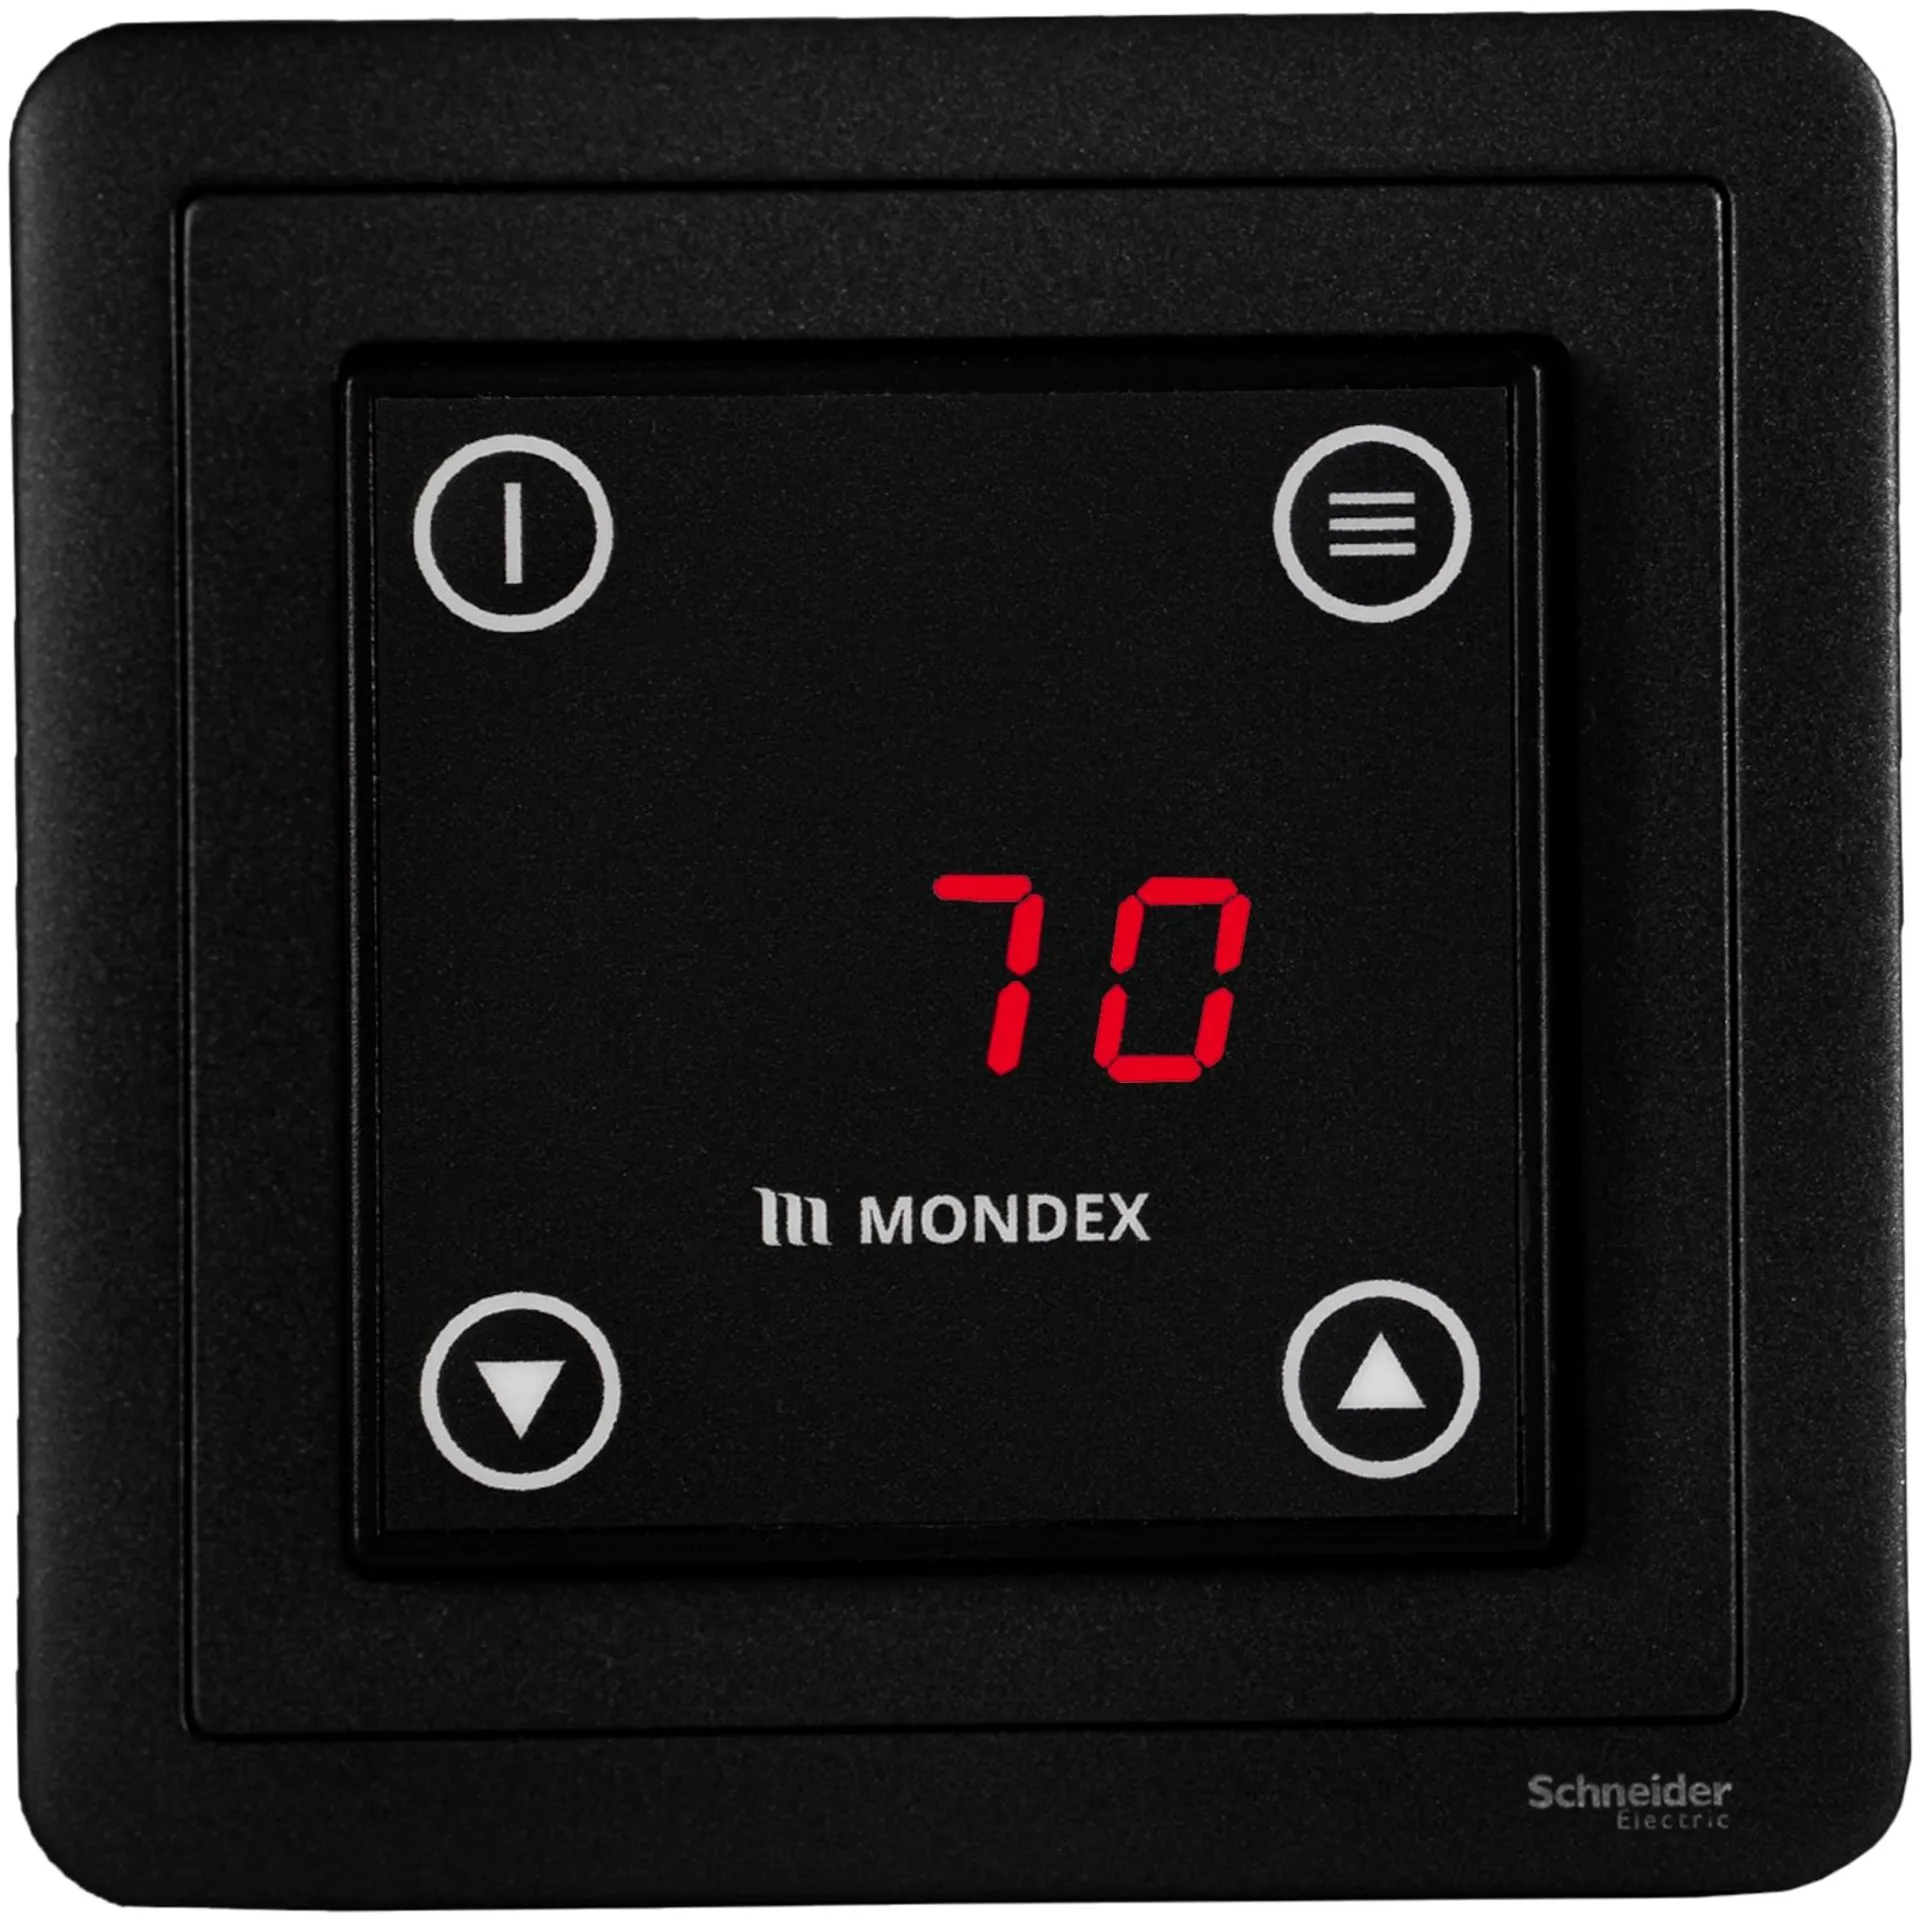 Sähkökiuas Mondex Kalla E2 9.0 KW musta - 2